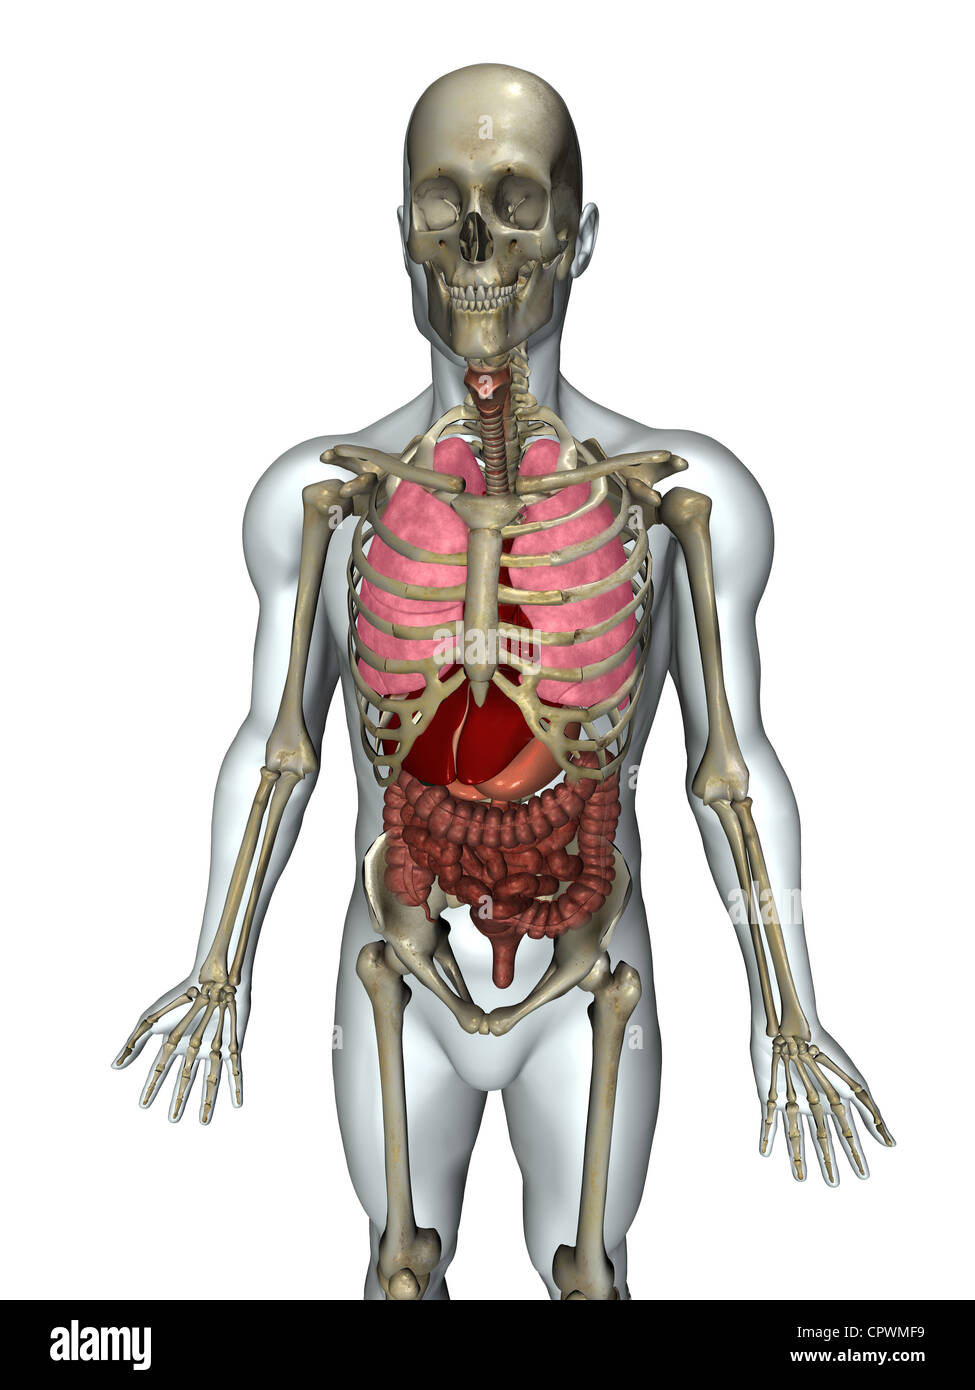 Anatomische Darstellung des menschlichen Körpers Stockfoto